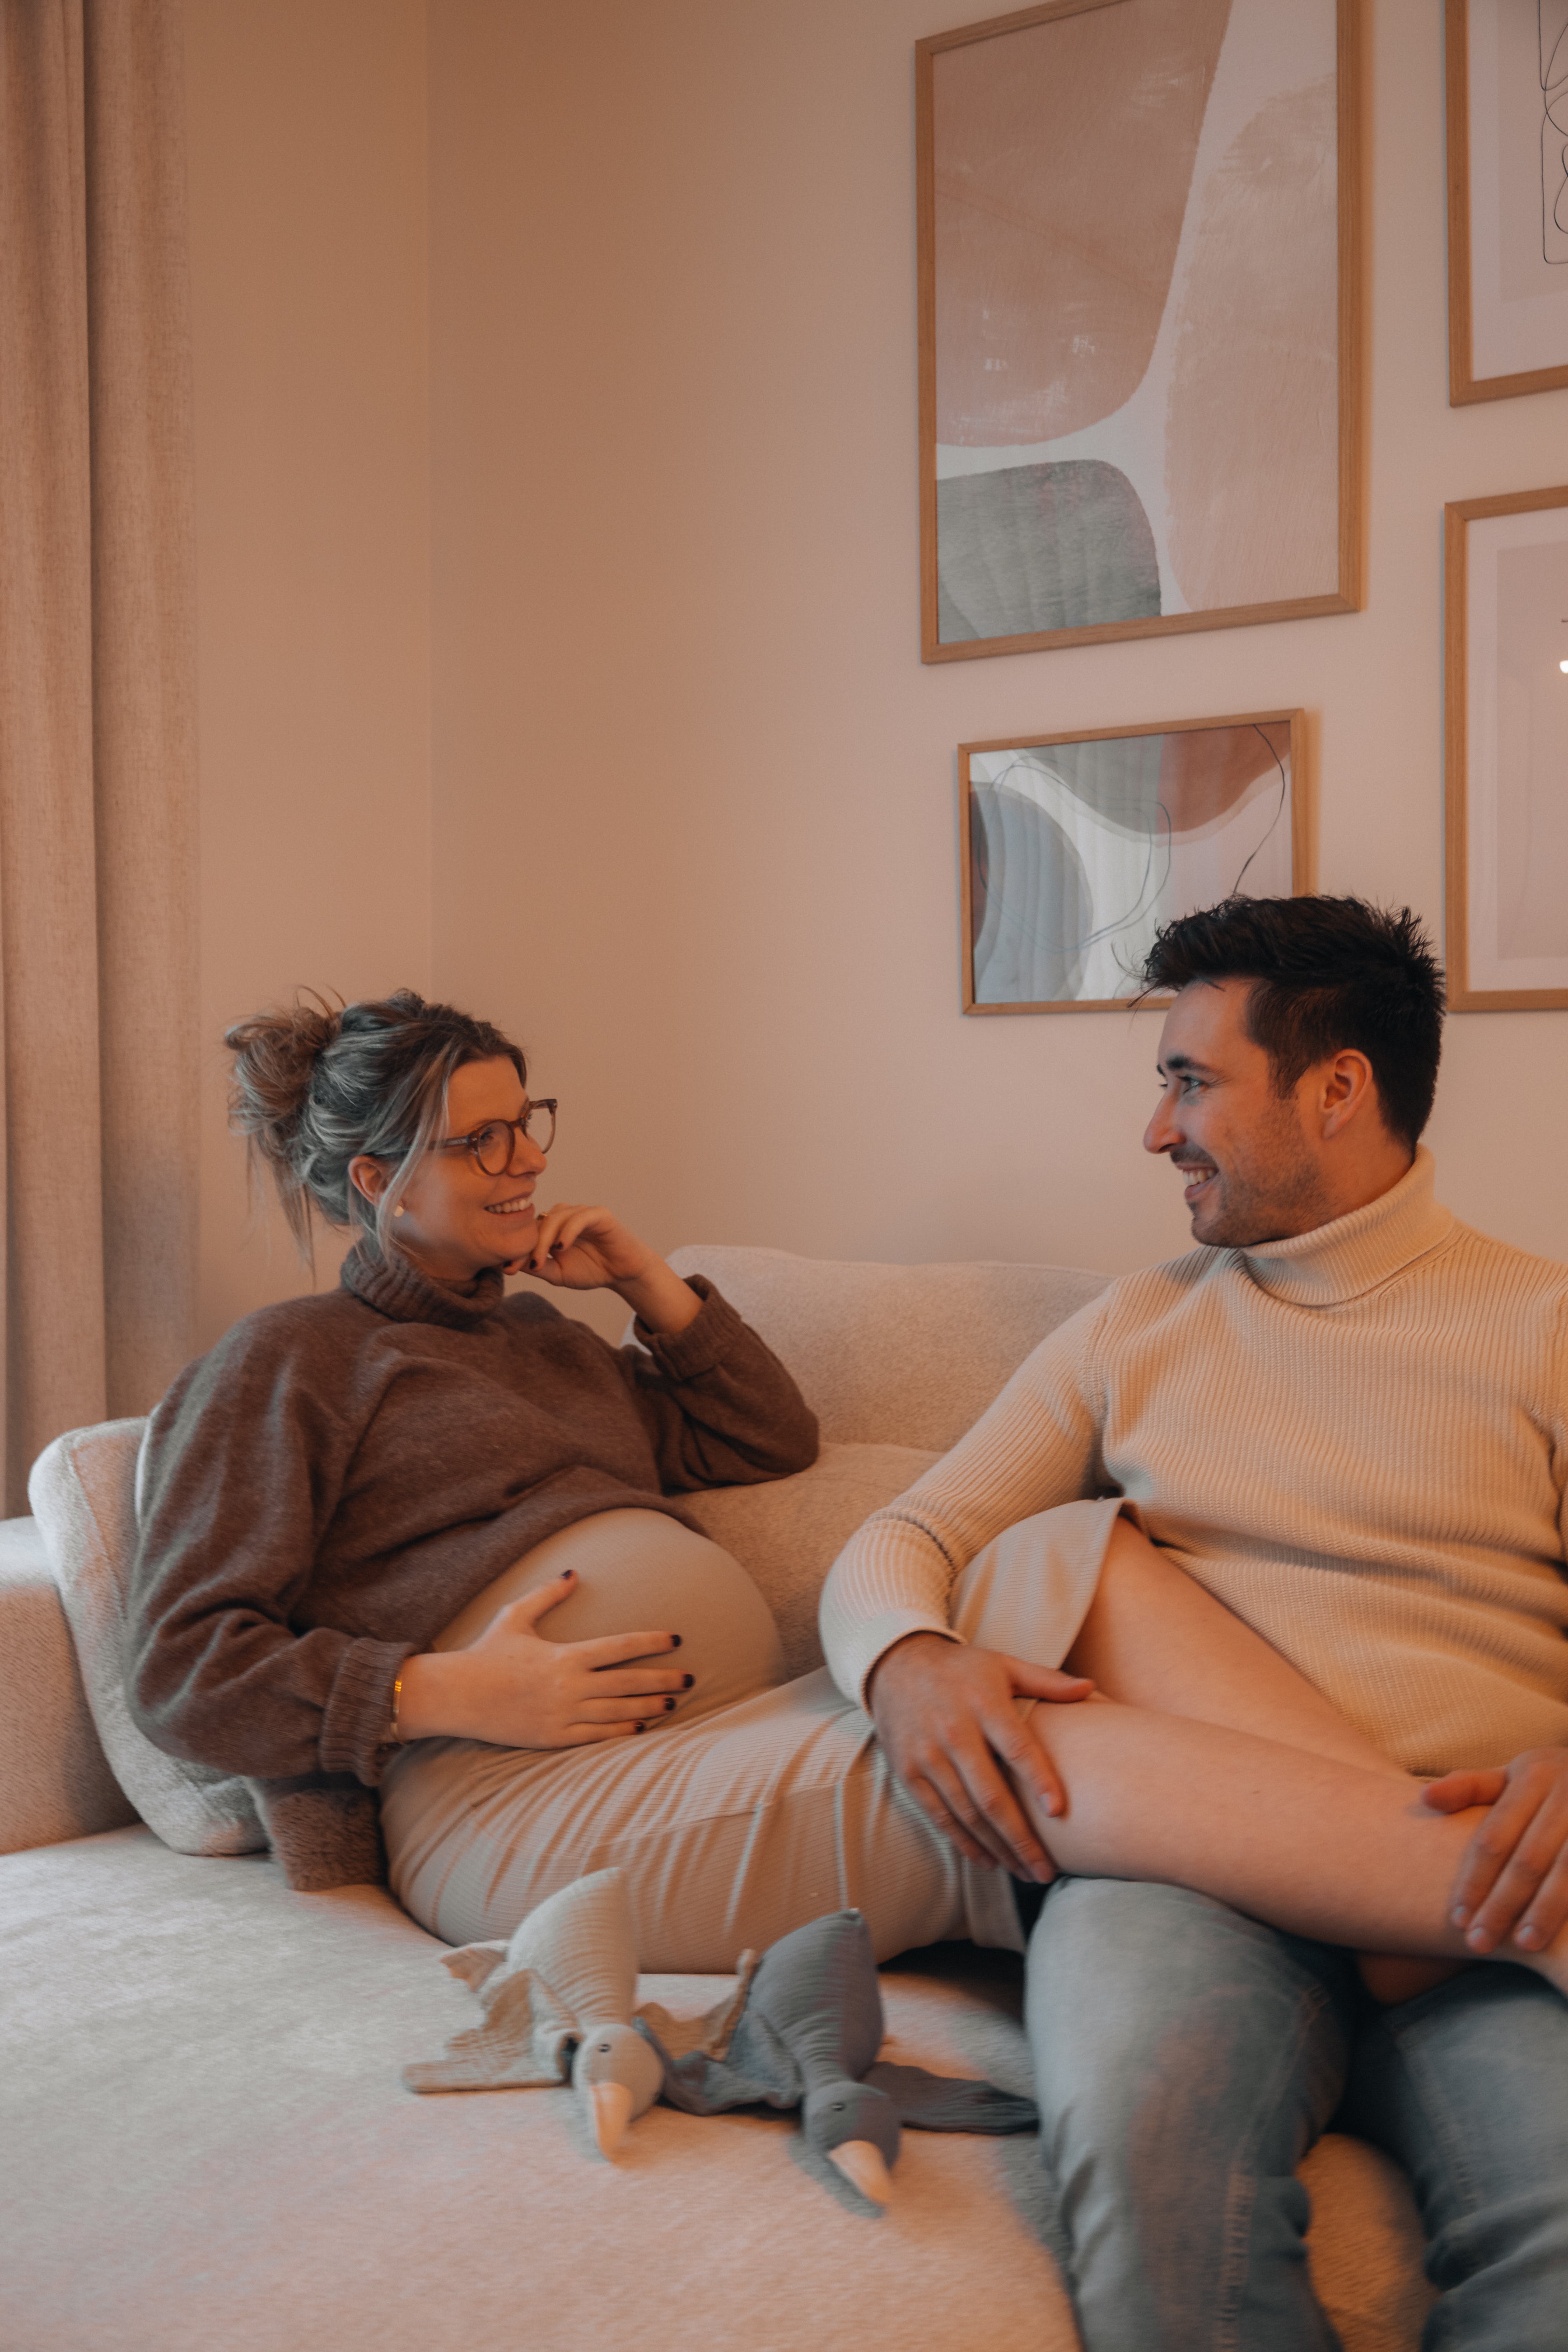 Une femme enceinte est assise avec ses jambes posées sur son mari | Source : Pexels